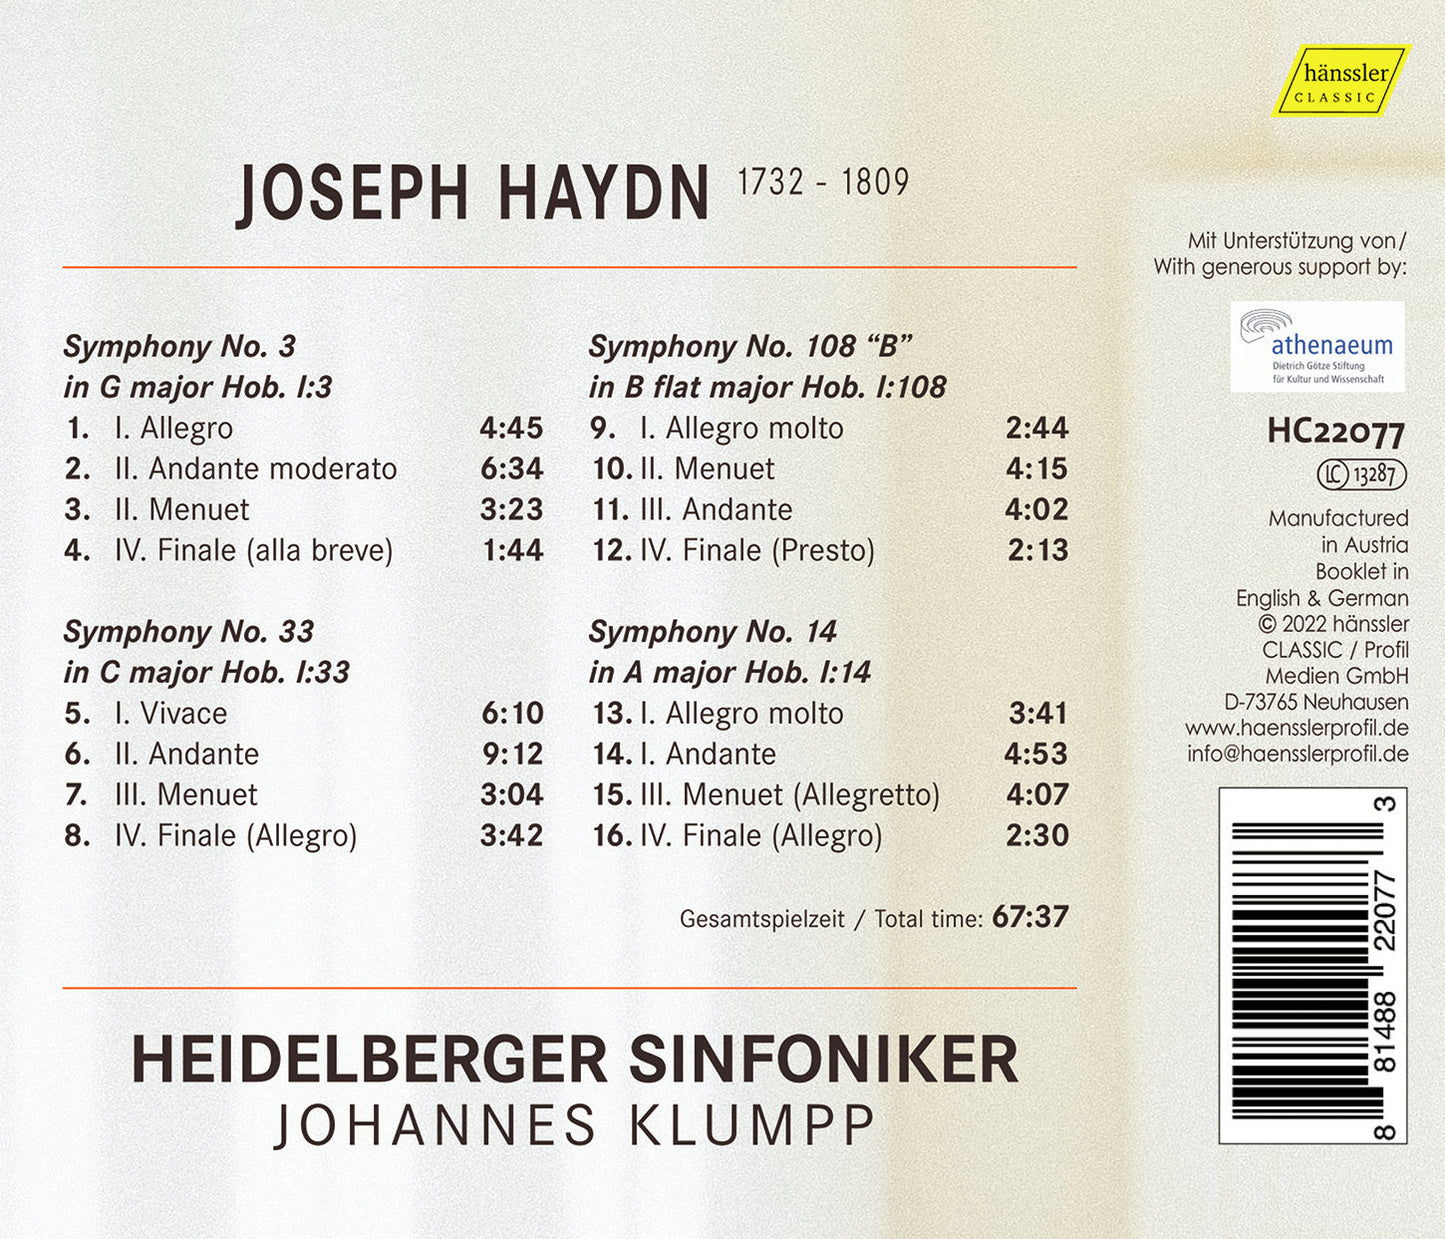 Haydn 27 - Symphonies Nos. 3, 33, 108, & 14